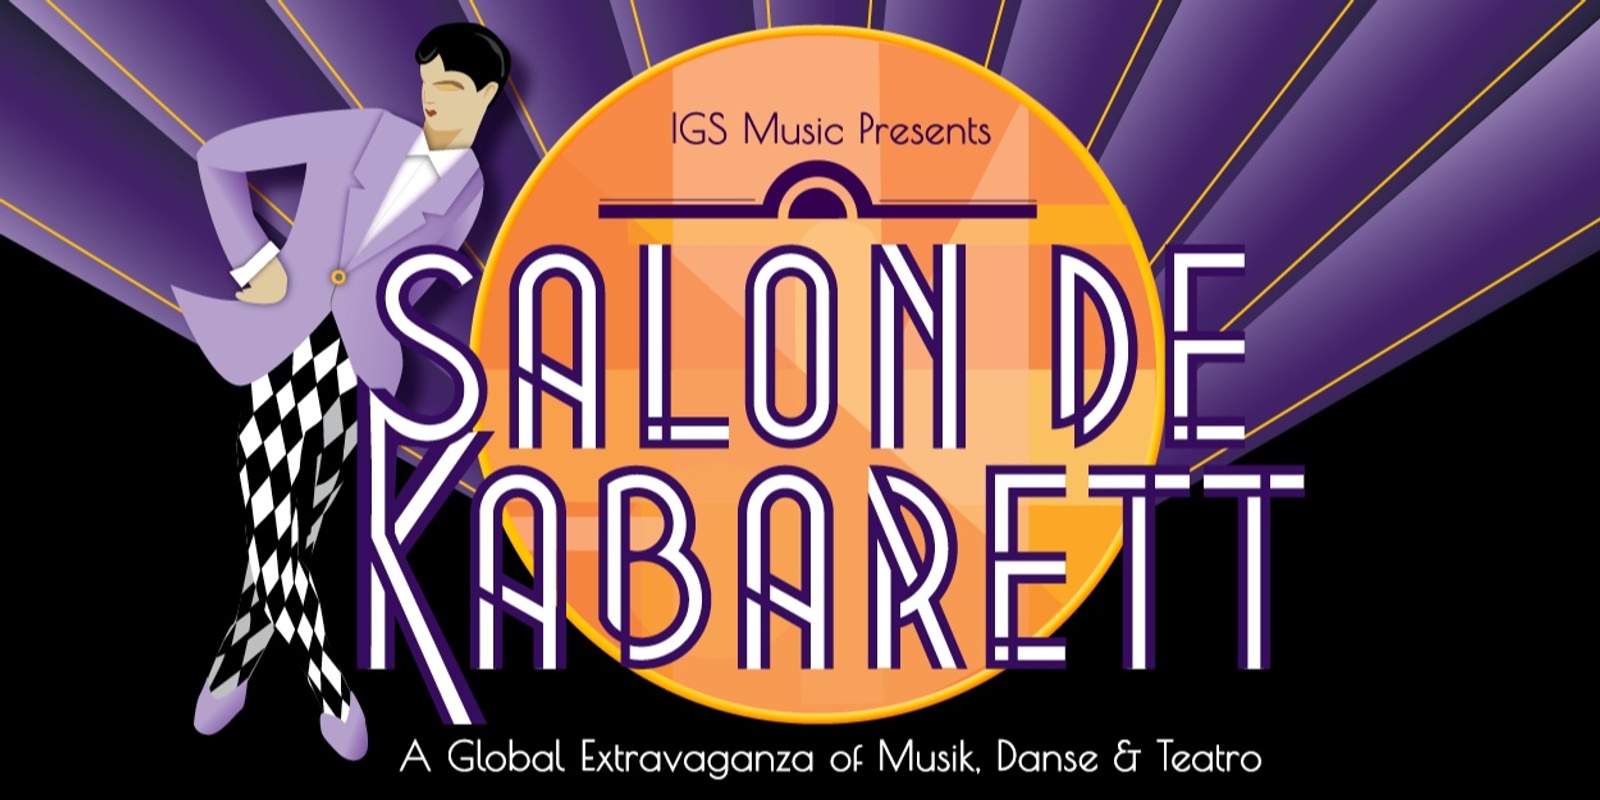 Banner image for IGS Salon de Kabarett | Staff + Student Concert